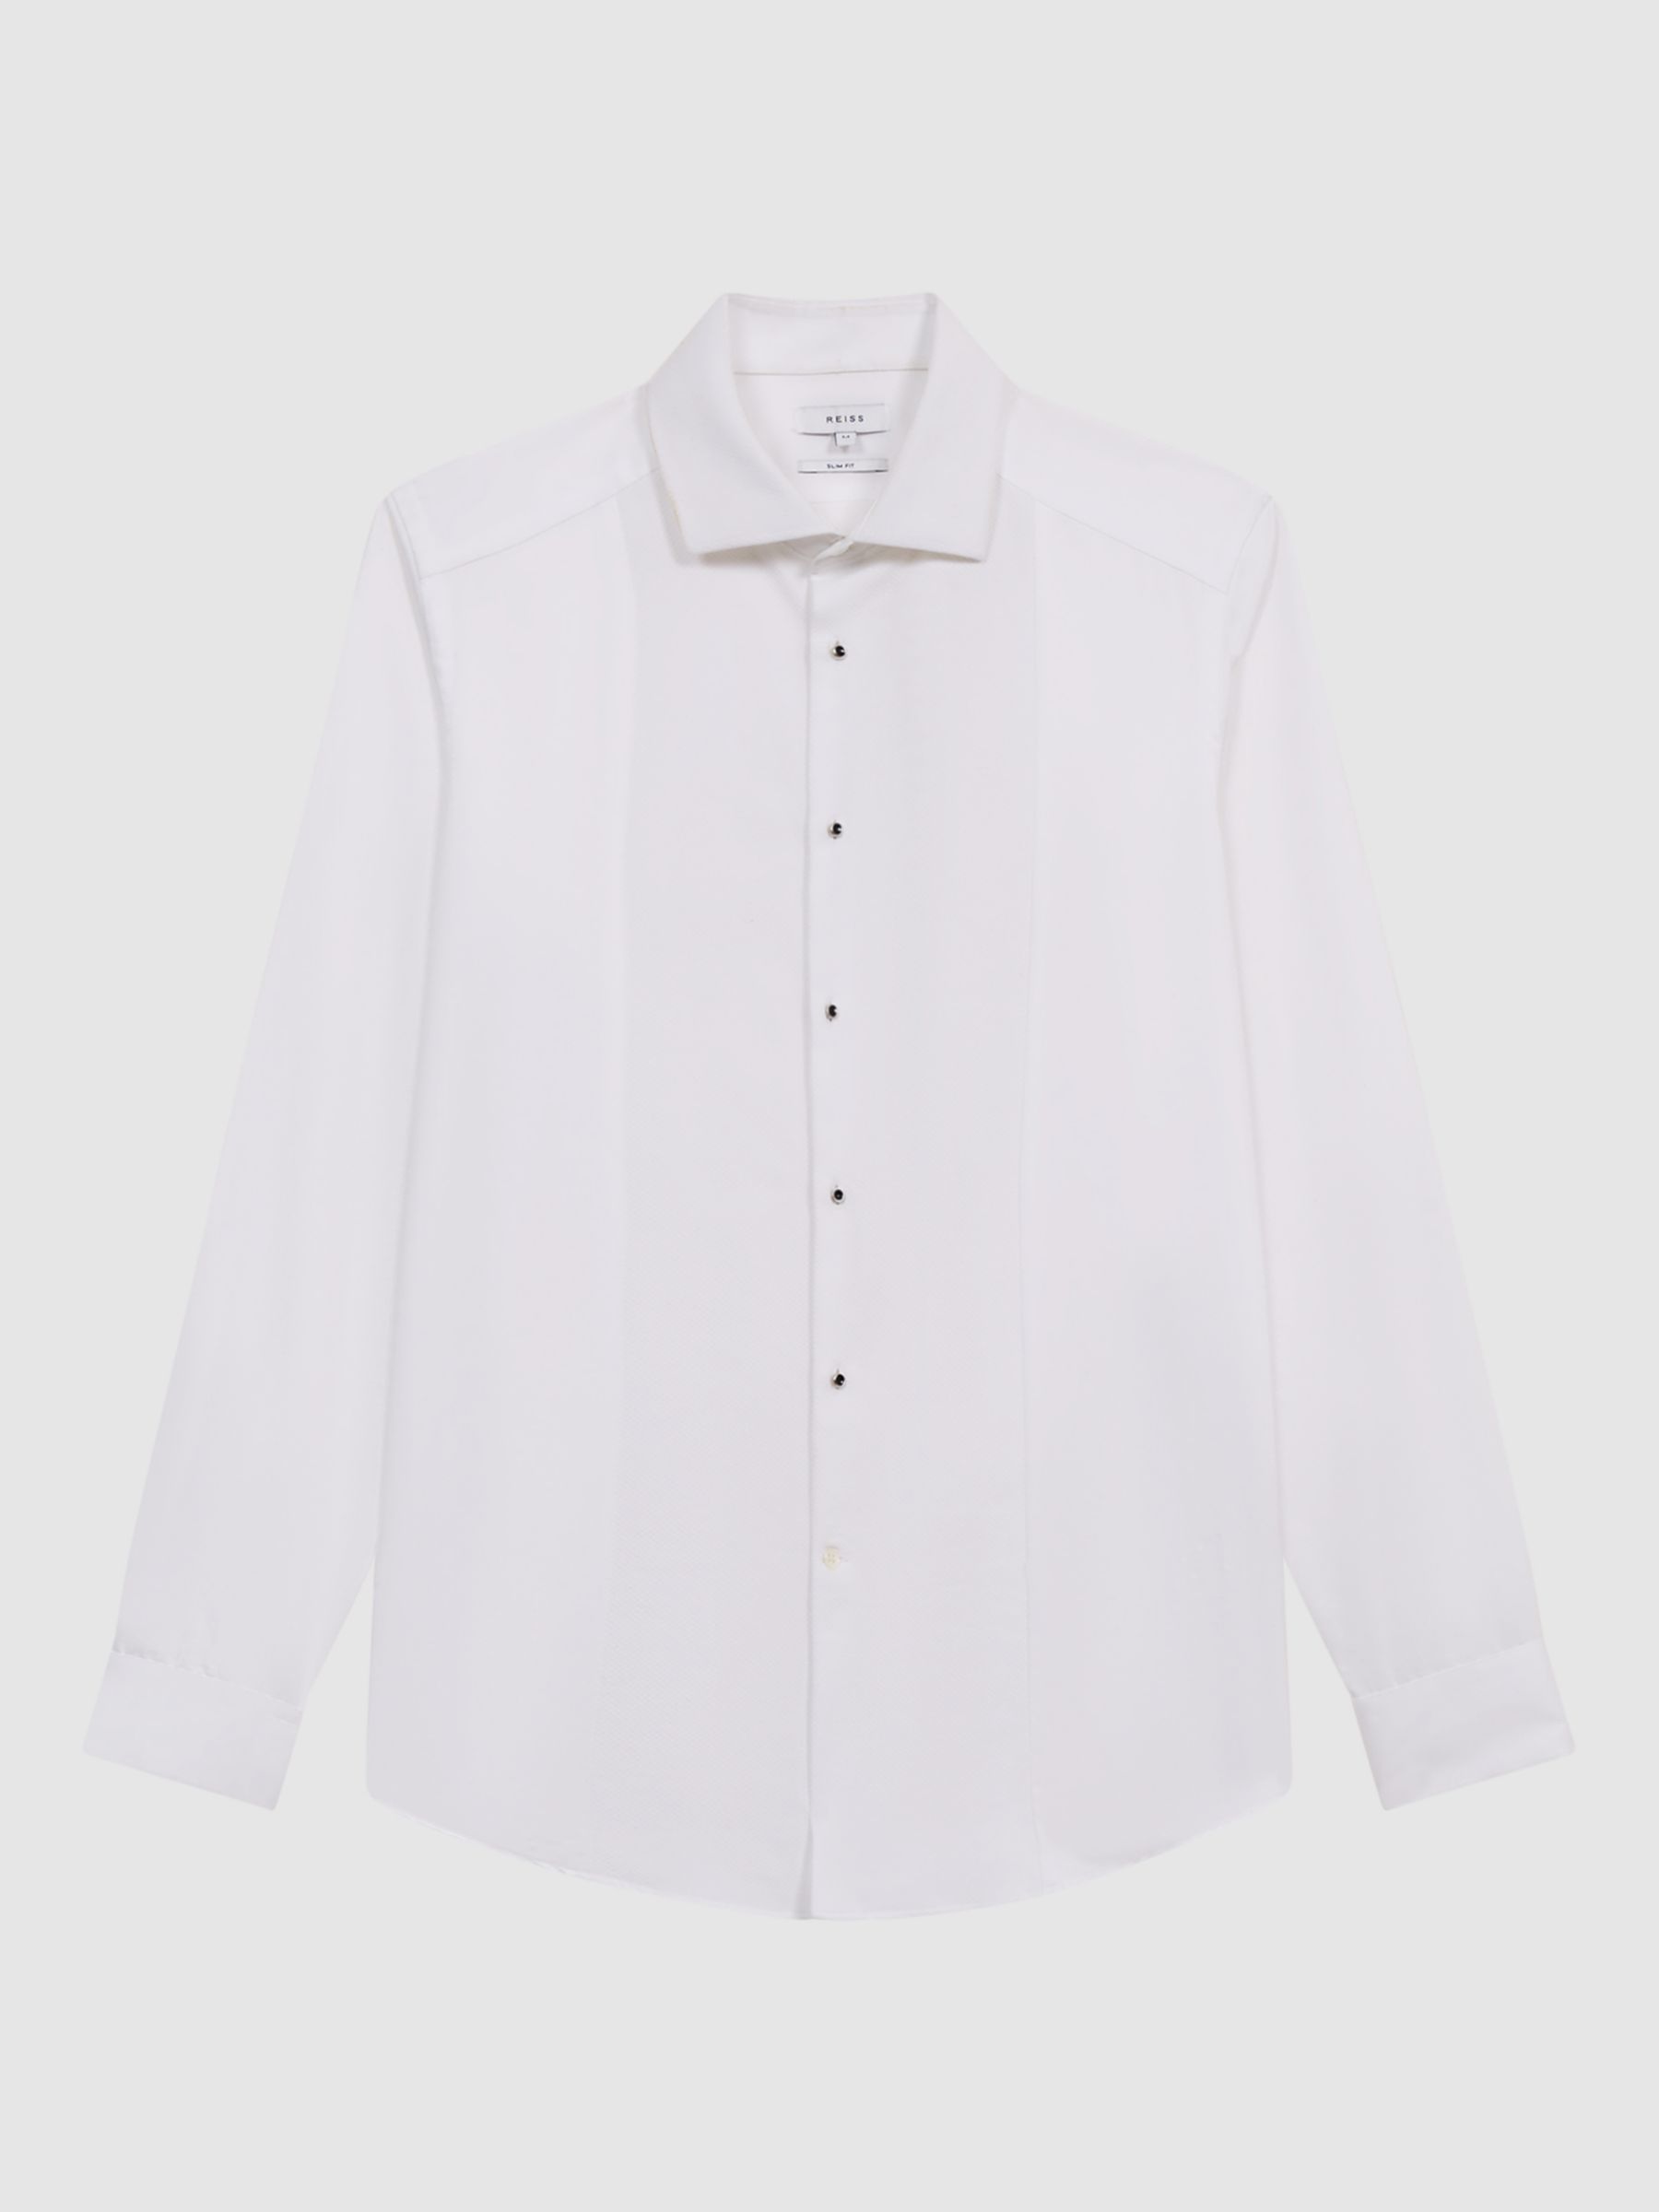 Reiss Marcel Slim Fit Cotton Dinner Shirt, White, XS